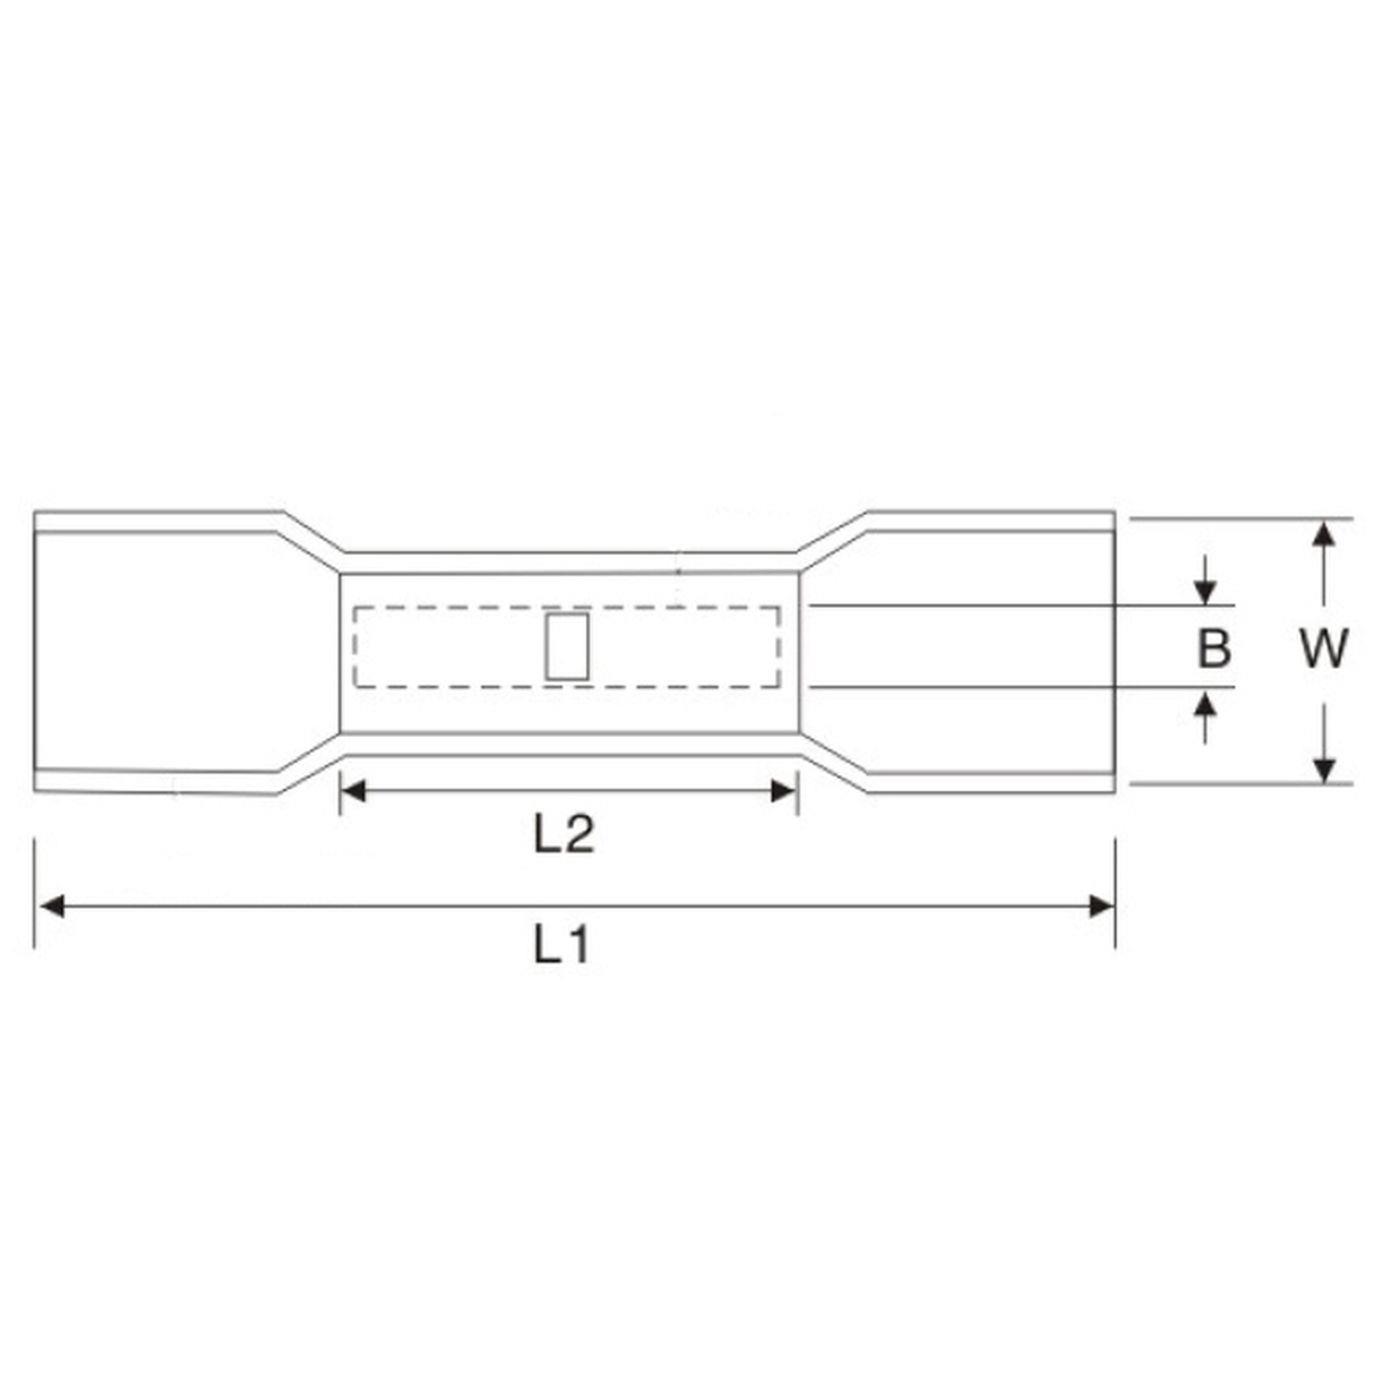 25x Schrumpf Stoßverbinder mit Schrumpfschlauch vollisoliert 1,5-2,5mm² Blau Quetschverbinder Messing verzinnt